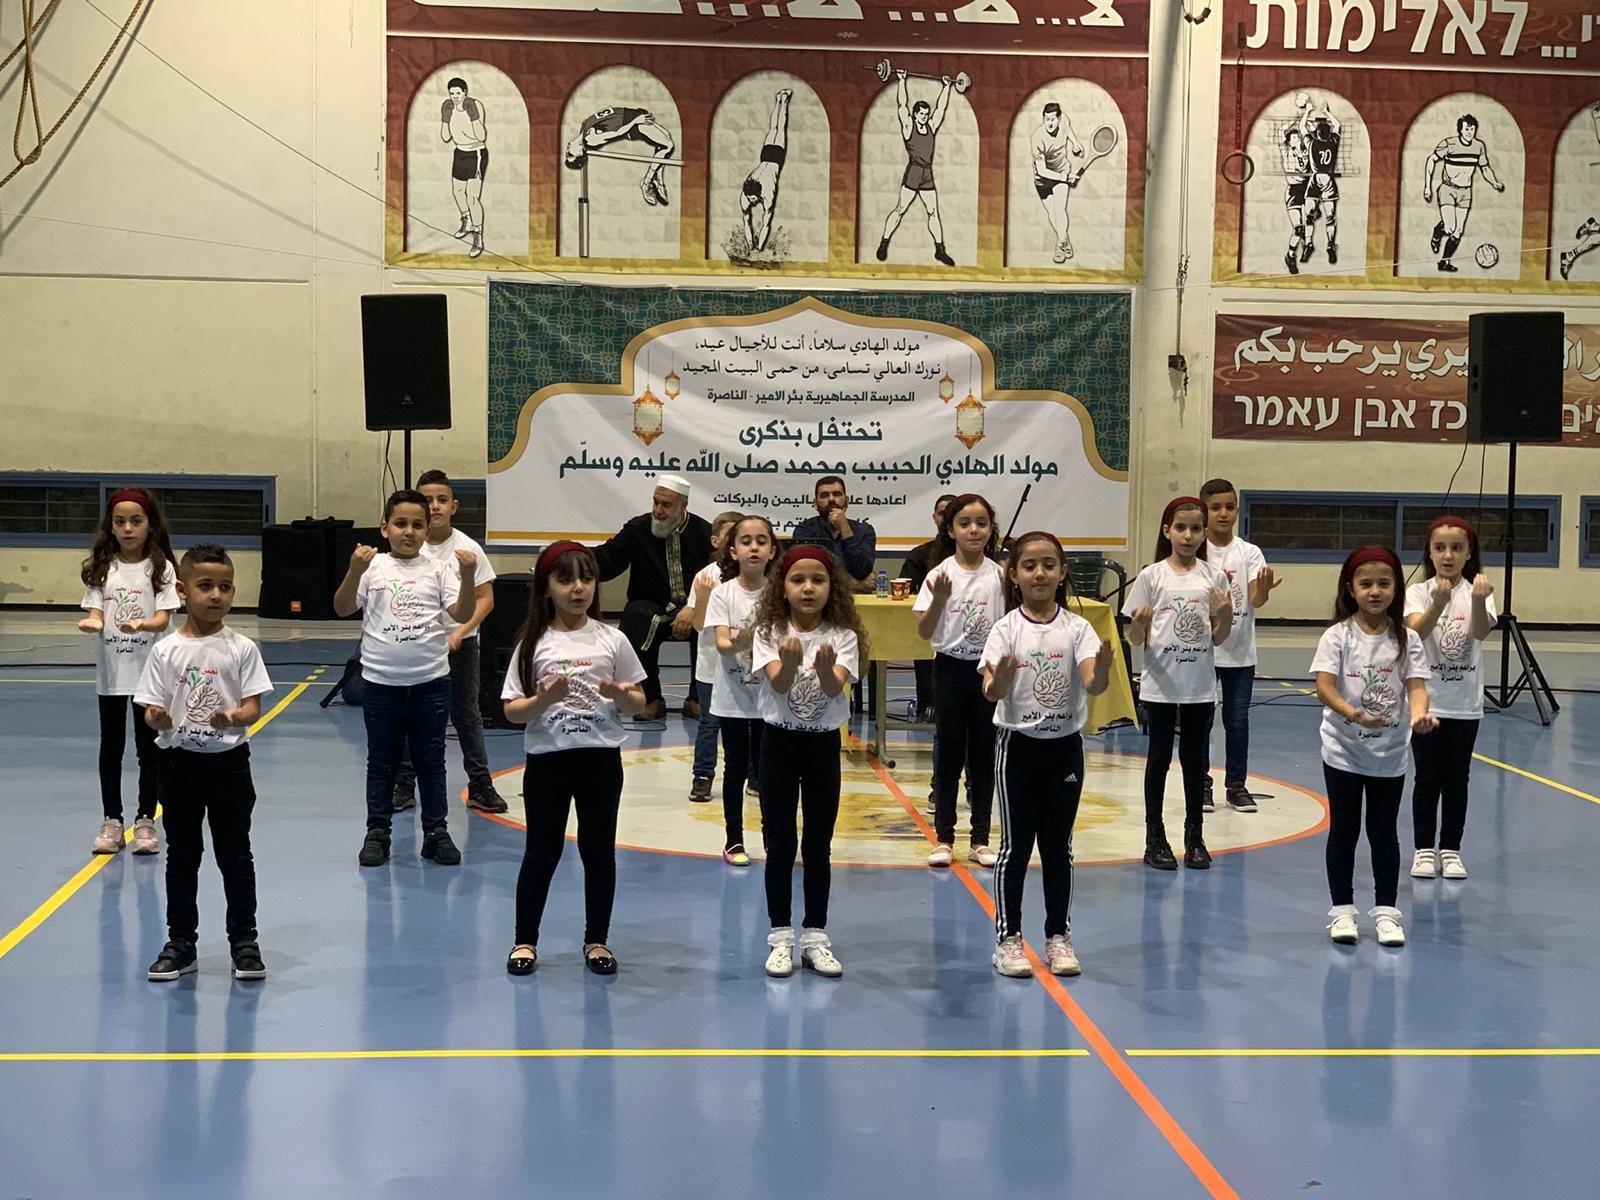 أمسية تكريم مَهيبة بأجواءٍ روحانيةّ قامت المدرسة الجماهيريّة بئر الأمير-الناصرة بتنظيمها احتفاءً بتكريم الأمّ الفاضلة جهاد بطّو"ام سهيل" واحتفالًا بالمولد النّبويّ الشّريف-13